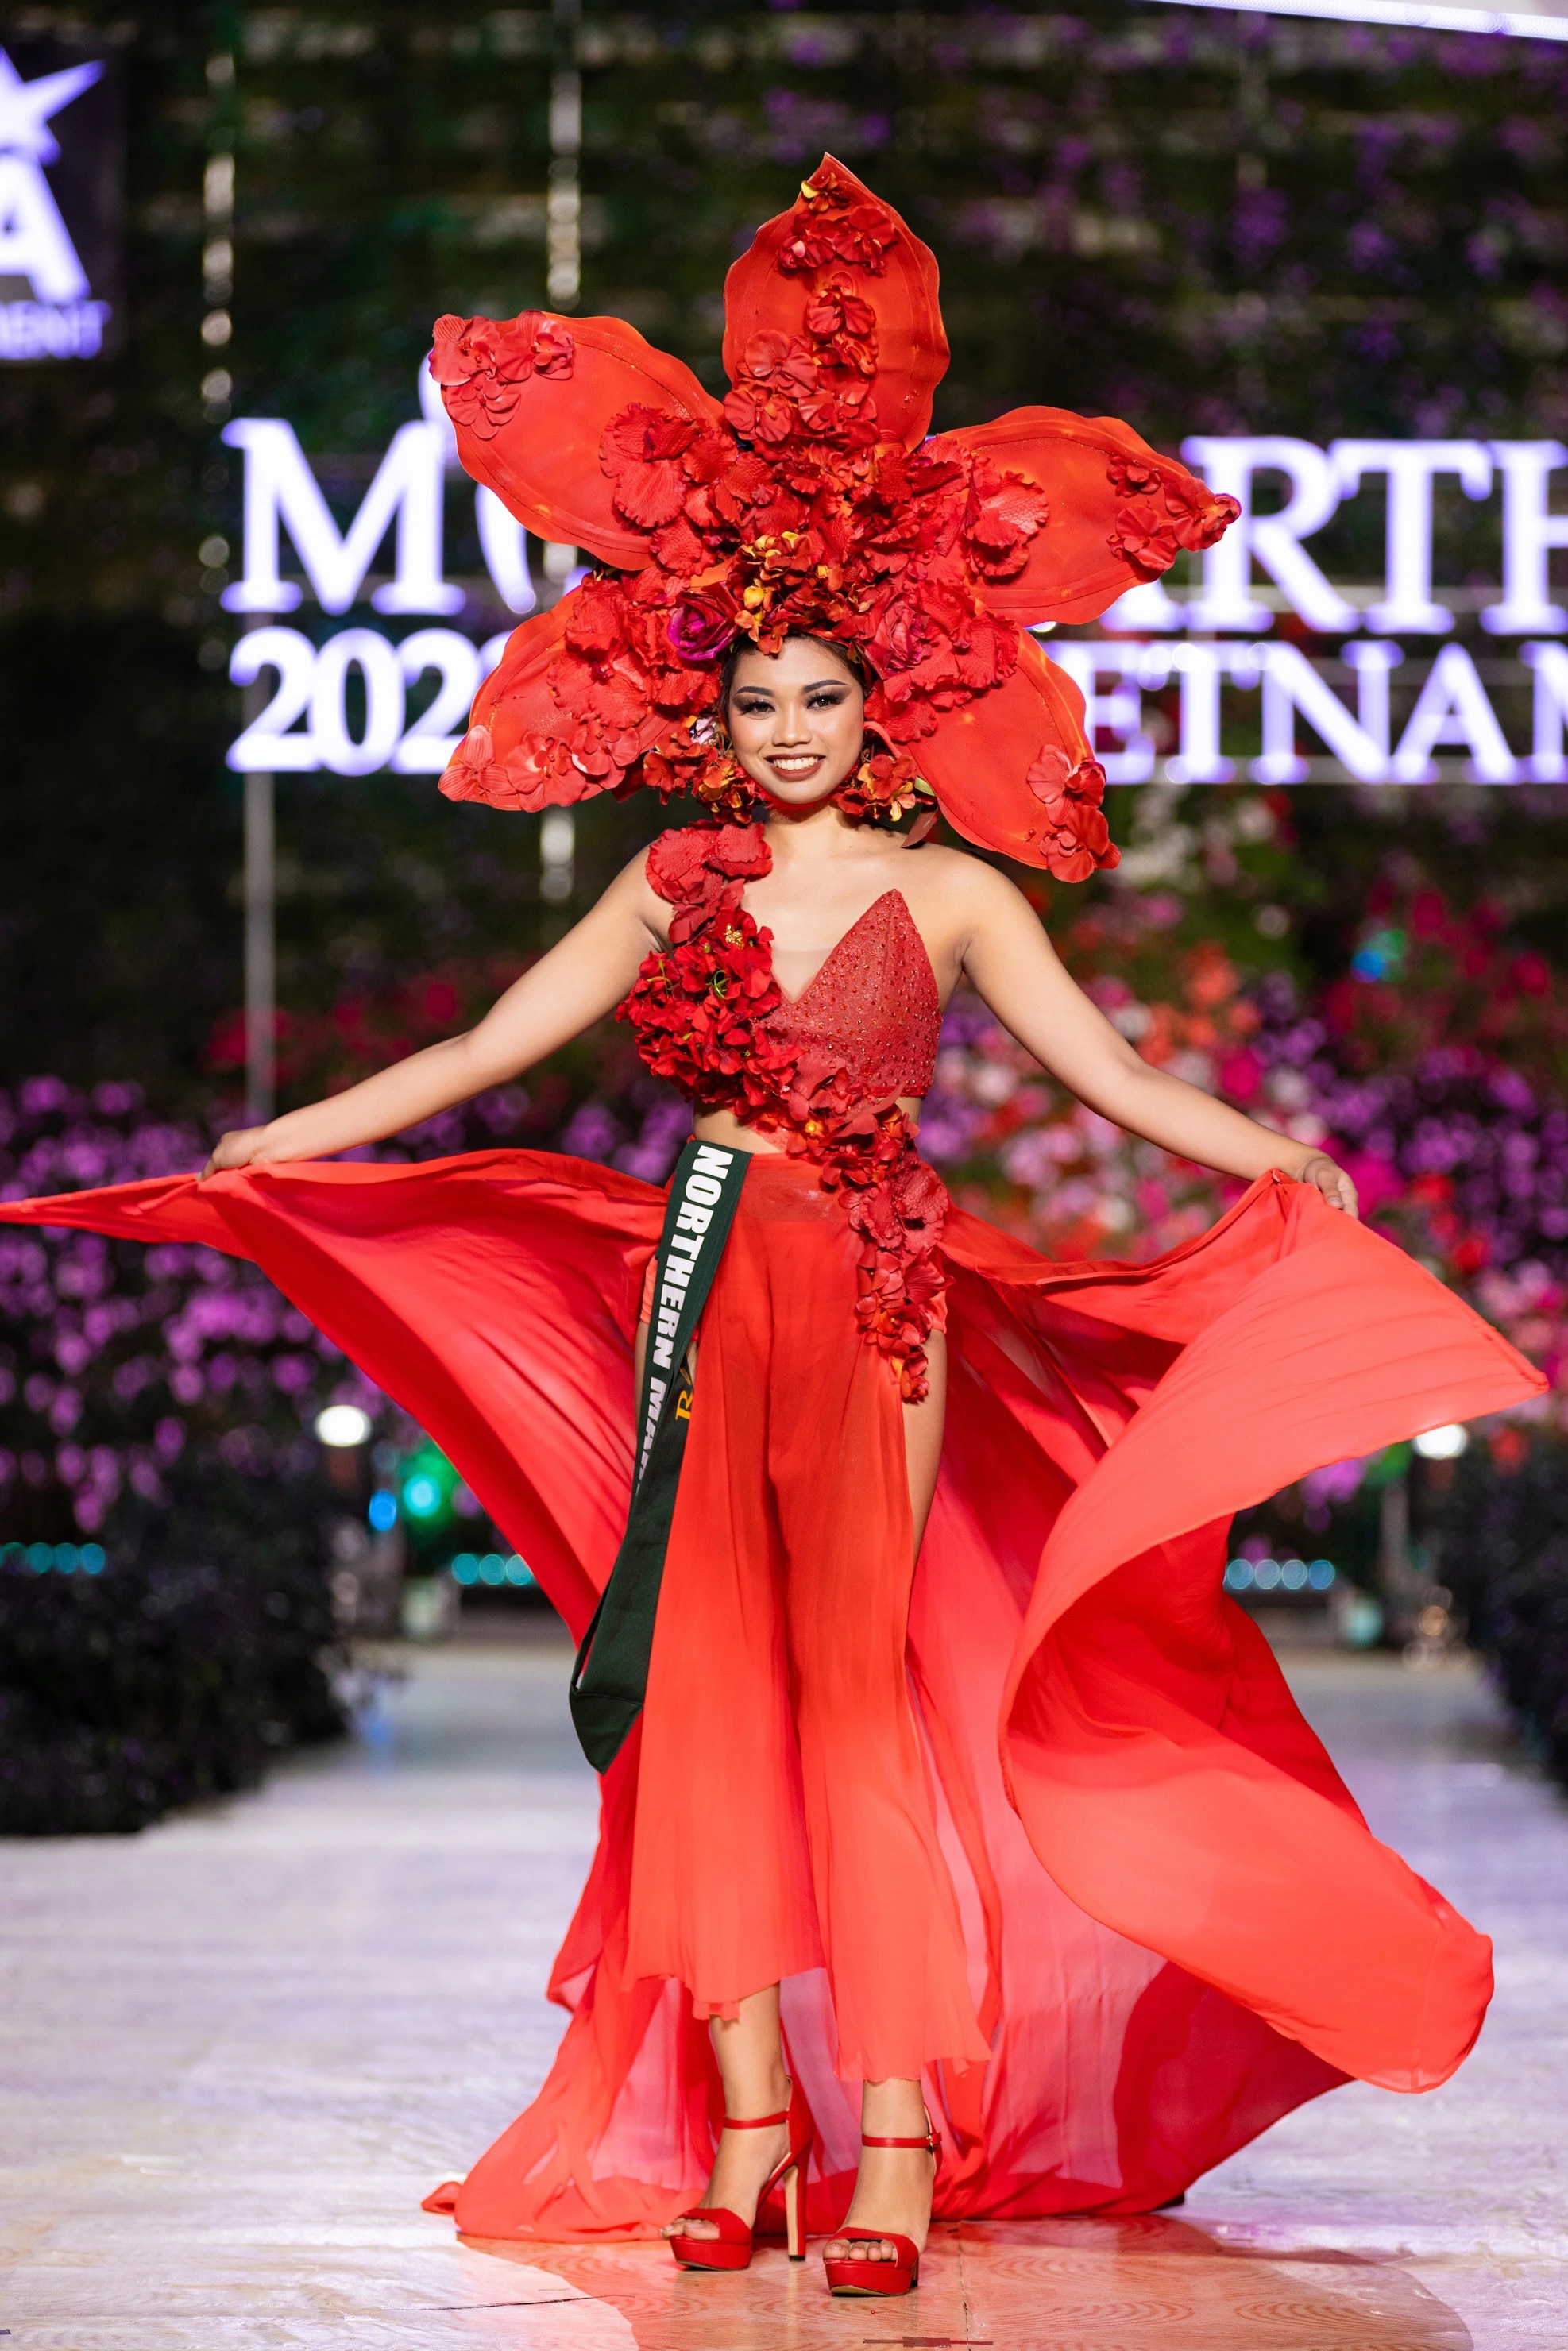 Bán kết Miss Earth 2023 màn trình Trang phục Dân tộc bùng nổ hình ảnh cỏ hoa, muông thú - Ảnh 14.